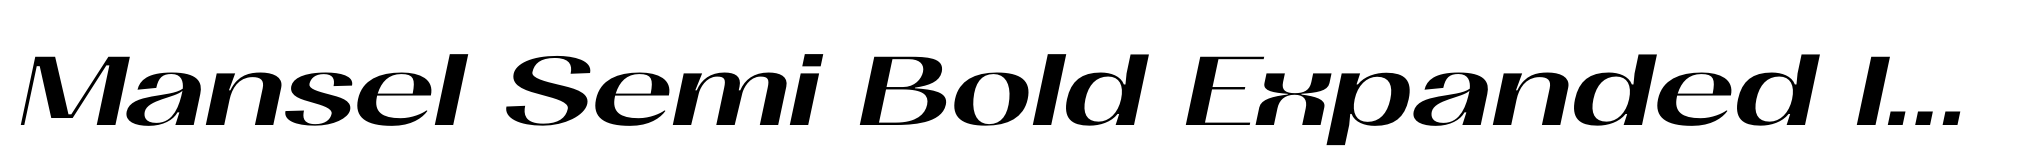 Mansel Semi Bold Expanded Italic image